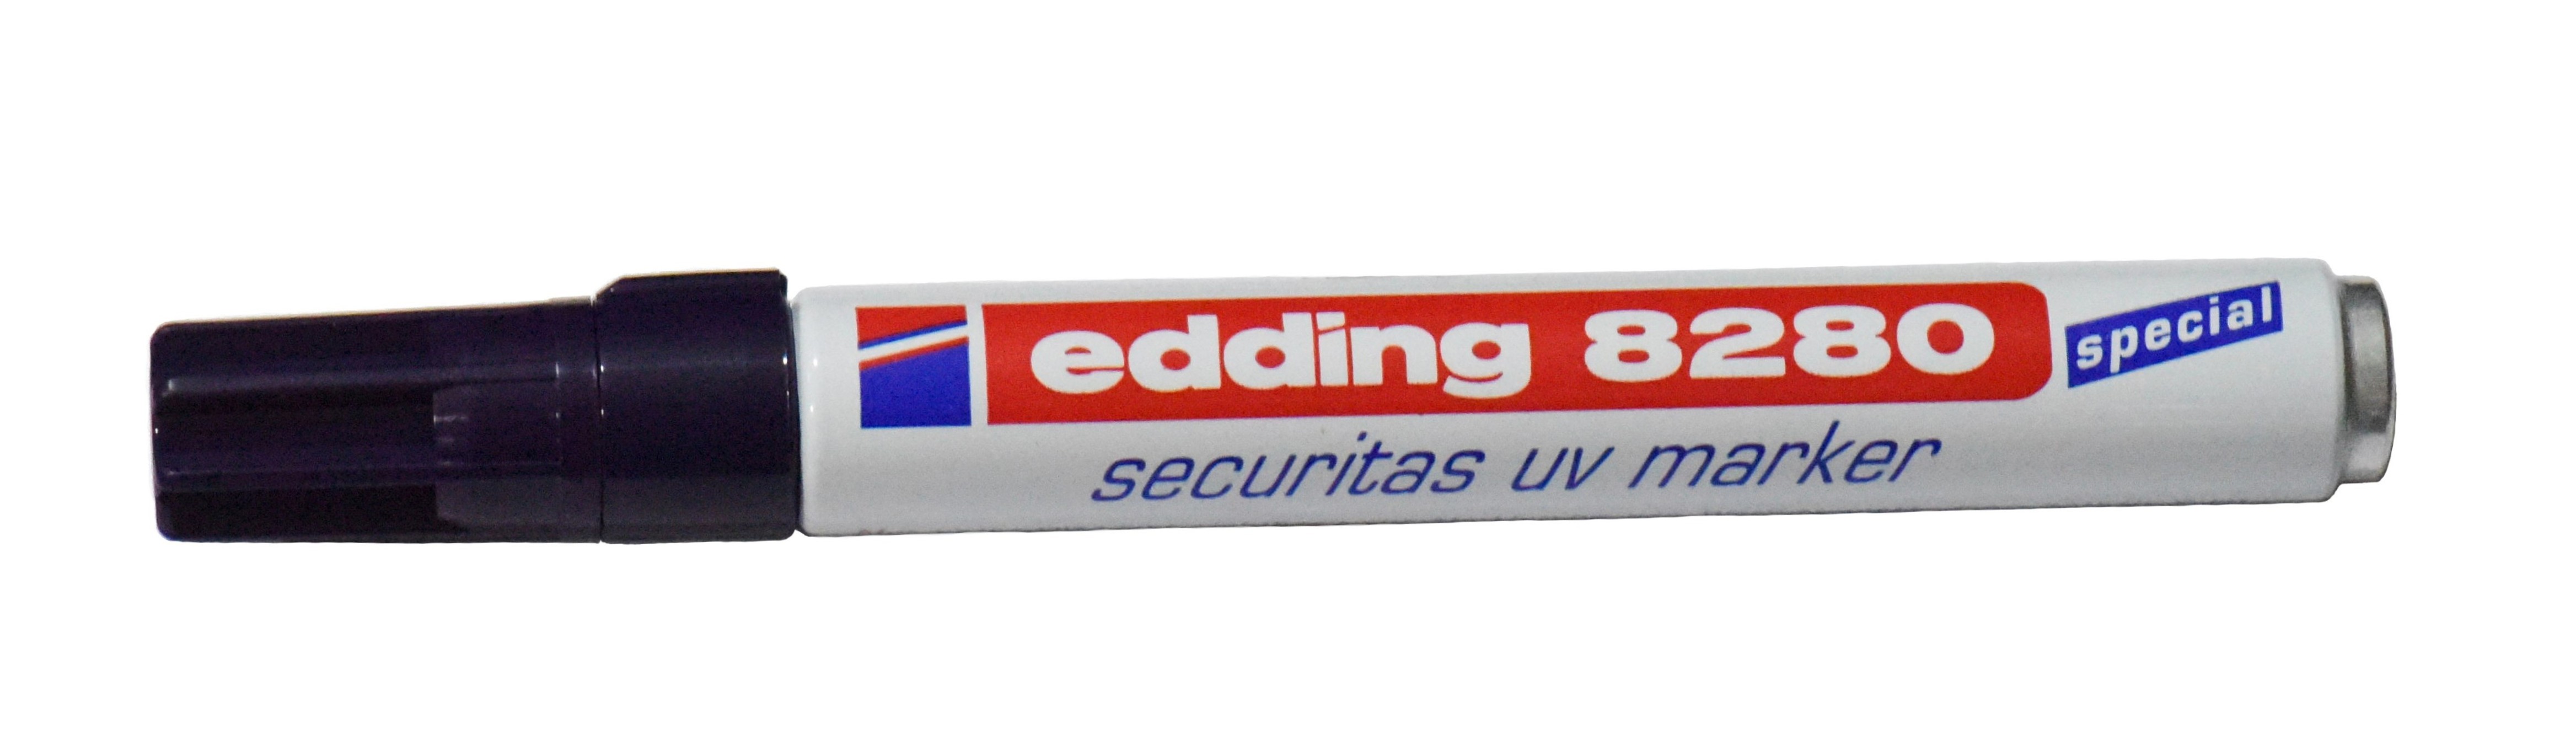 Edding 8280. Маркер промышленный синий e-3000 Edding. Ультрафиолетовый маркер по металлу. Химический маркер.